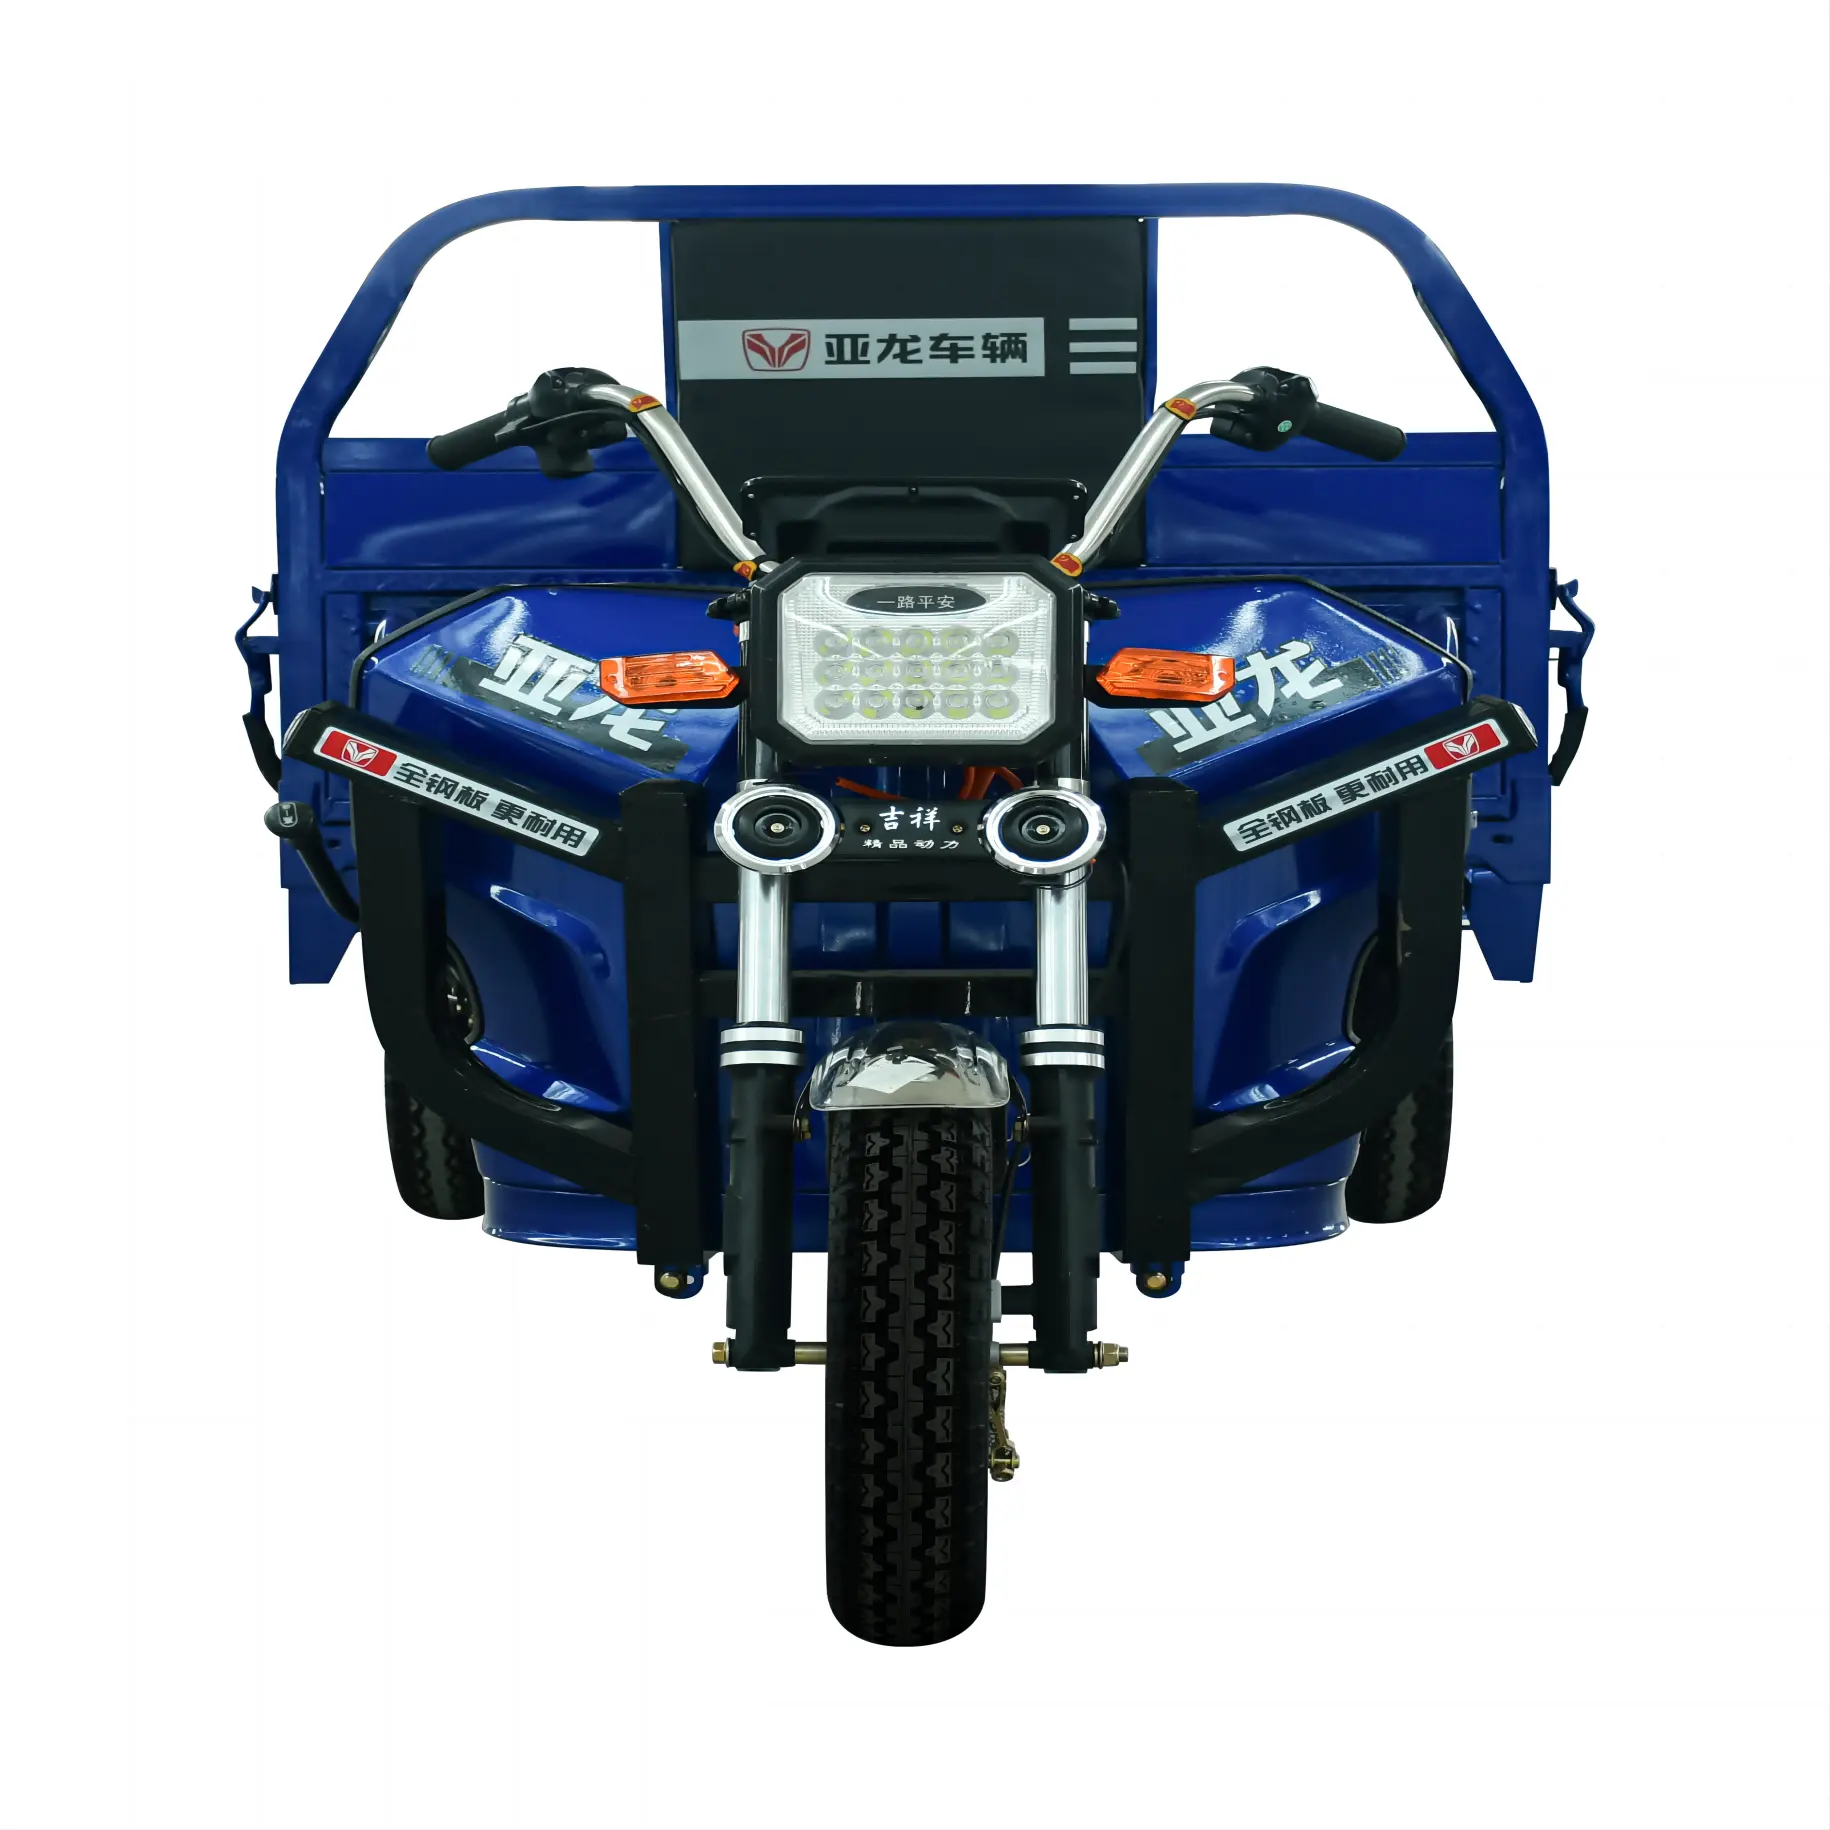 Hot Bán Tự Do 1000W 1200W Động Cơ 3 Bánh Xe Xe Đạp Trike Với Hàng Hóa